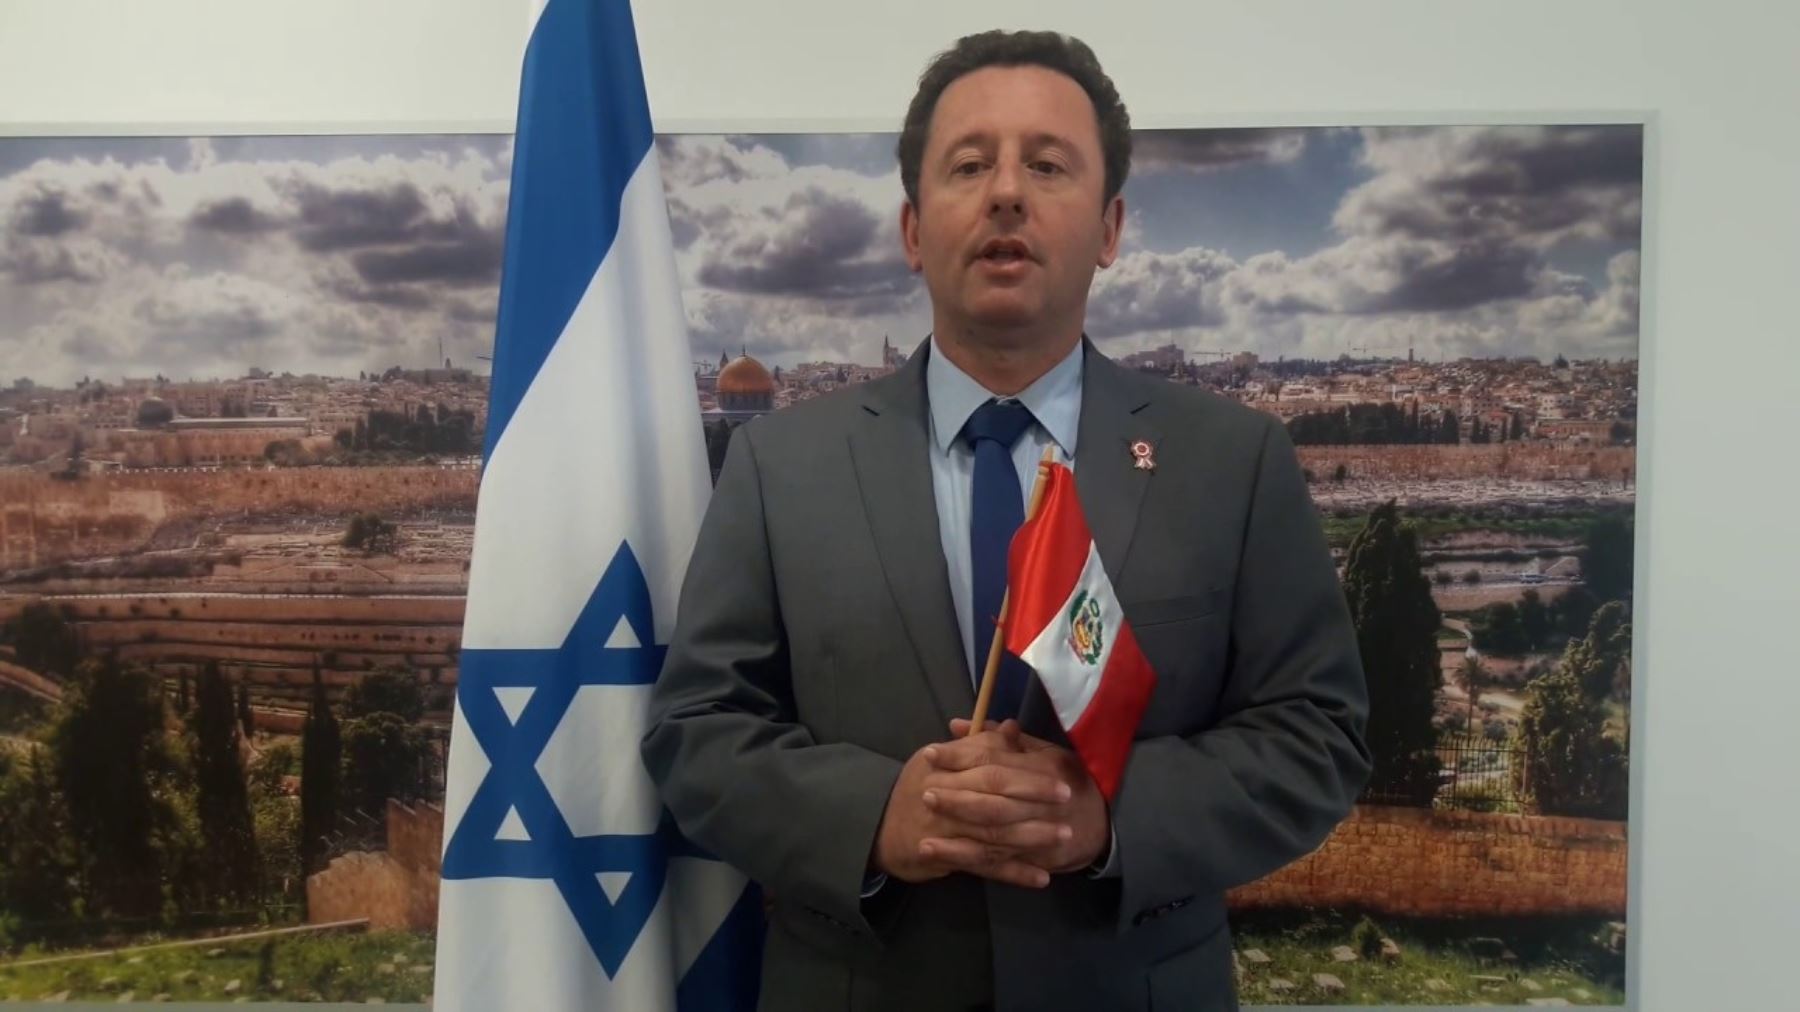 Embajador de Israel en el Perú, Raphael Singer, visitó por primera vez Trujillo, en la región La Libertad, y realizó varias actividades. inspeccionó varios proyectos agrícolas con irrigación israelí